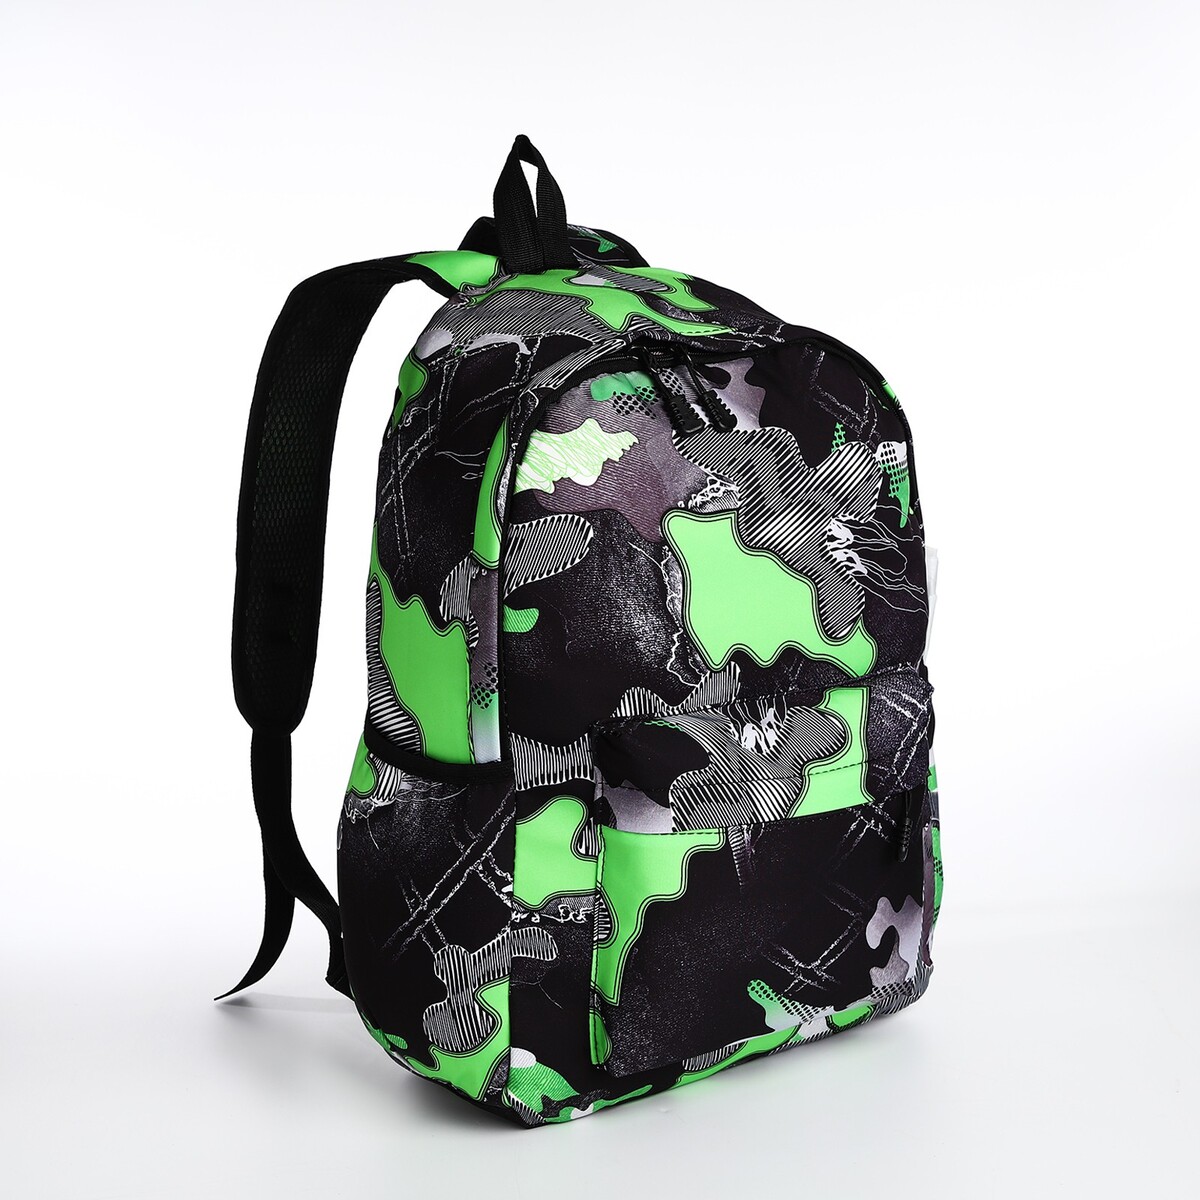 Рюкзак молодежный из текстиля, 3 кармана, цвет серый/зеленый